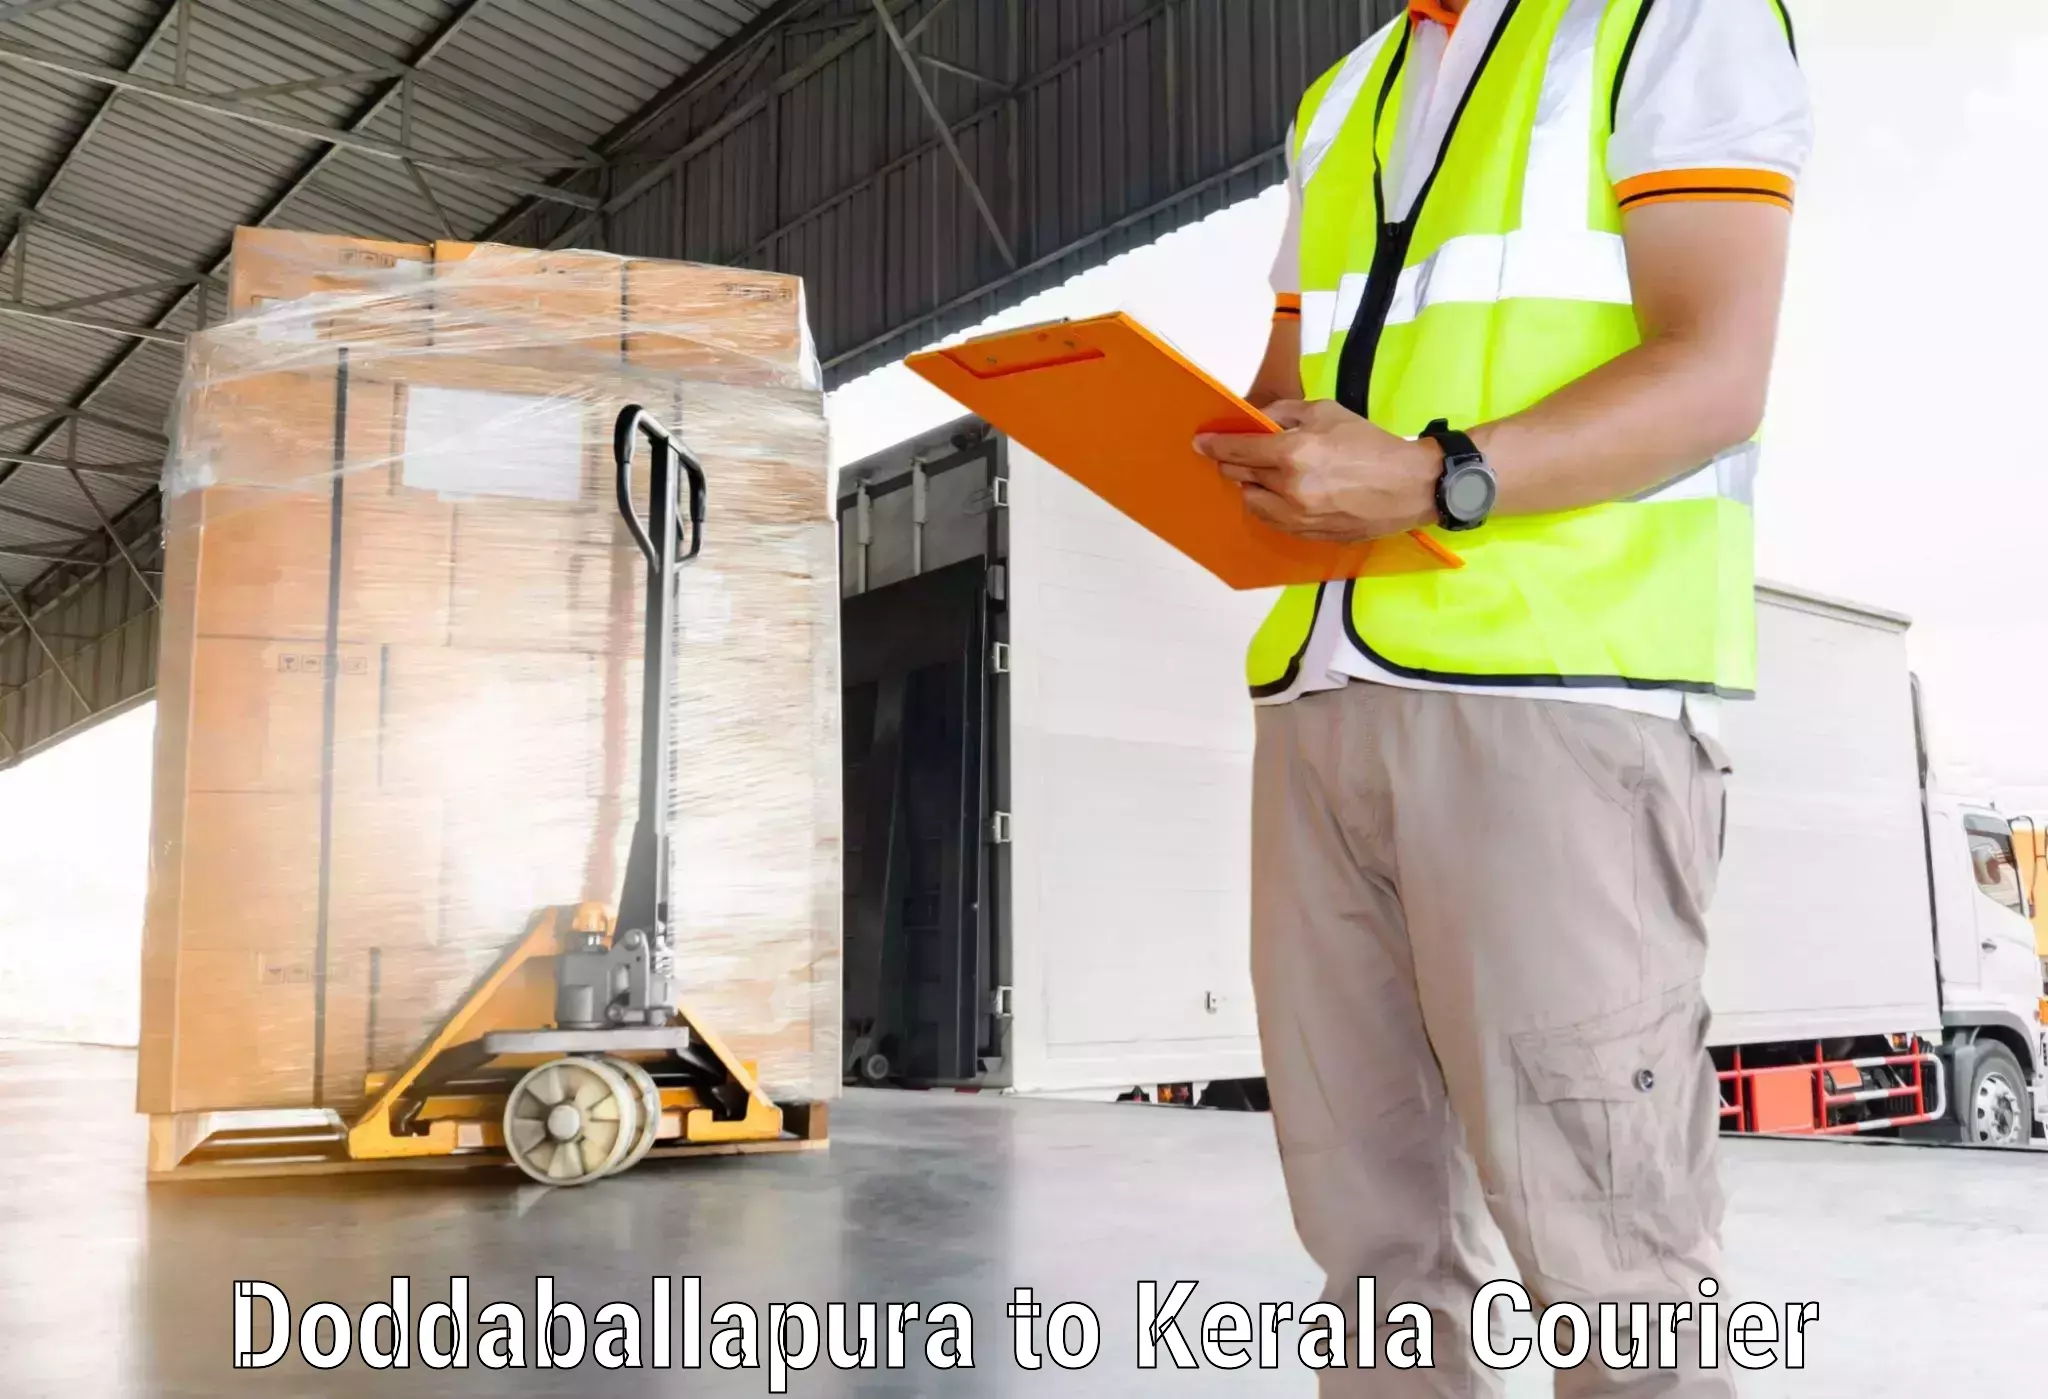 24/7 courier service Doddaballapura to Alathur Malabar